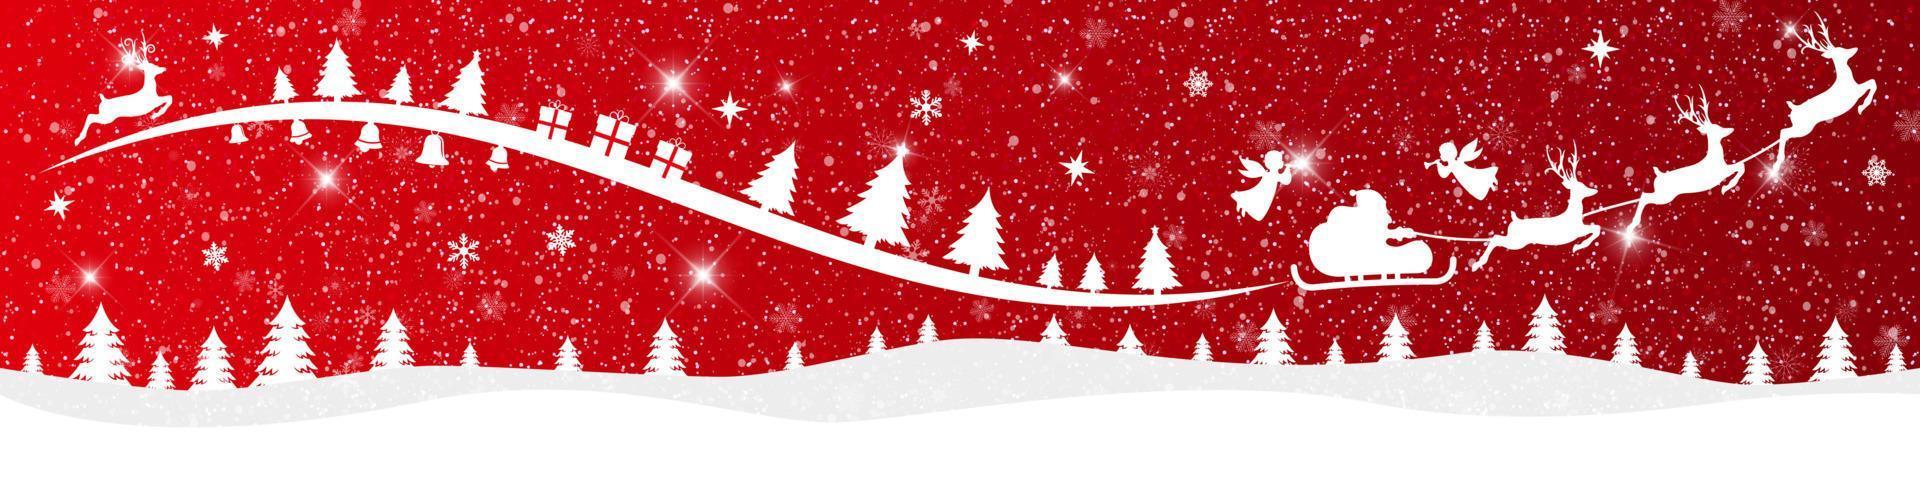 feliz navidad y próspero año nuevo sobre fondo rojo con santa claus y paisaje nevado. vector